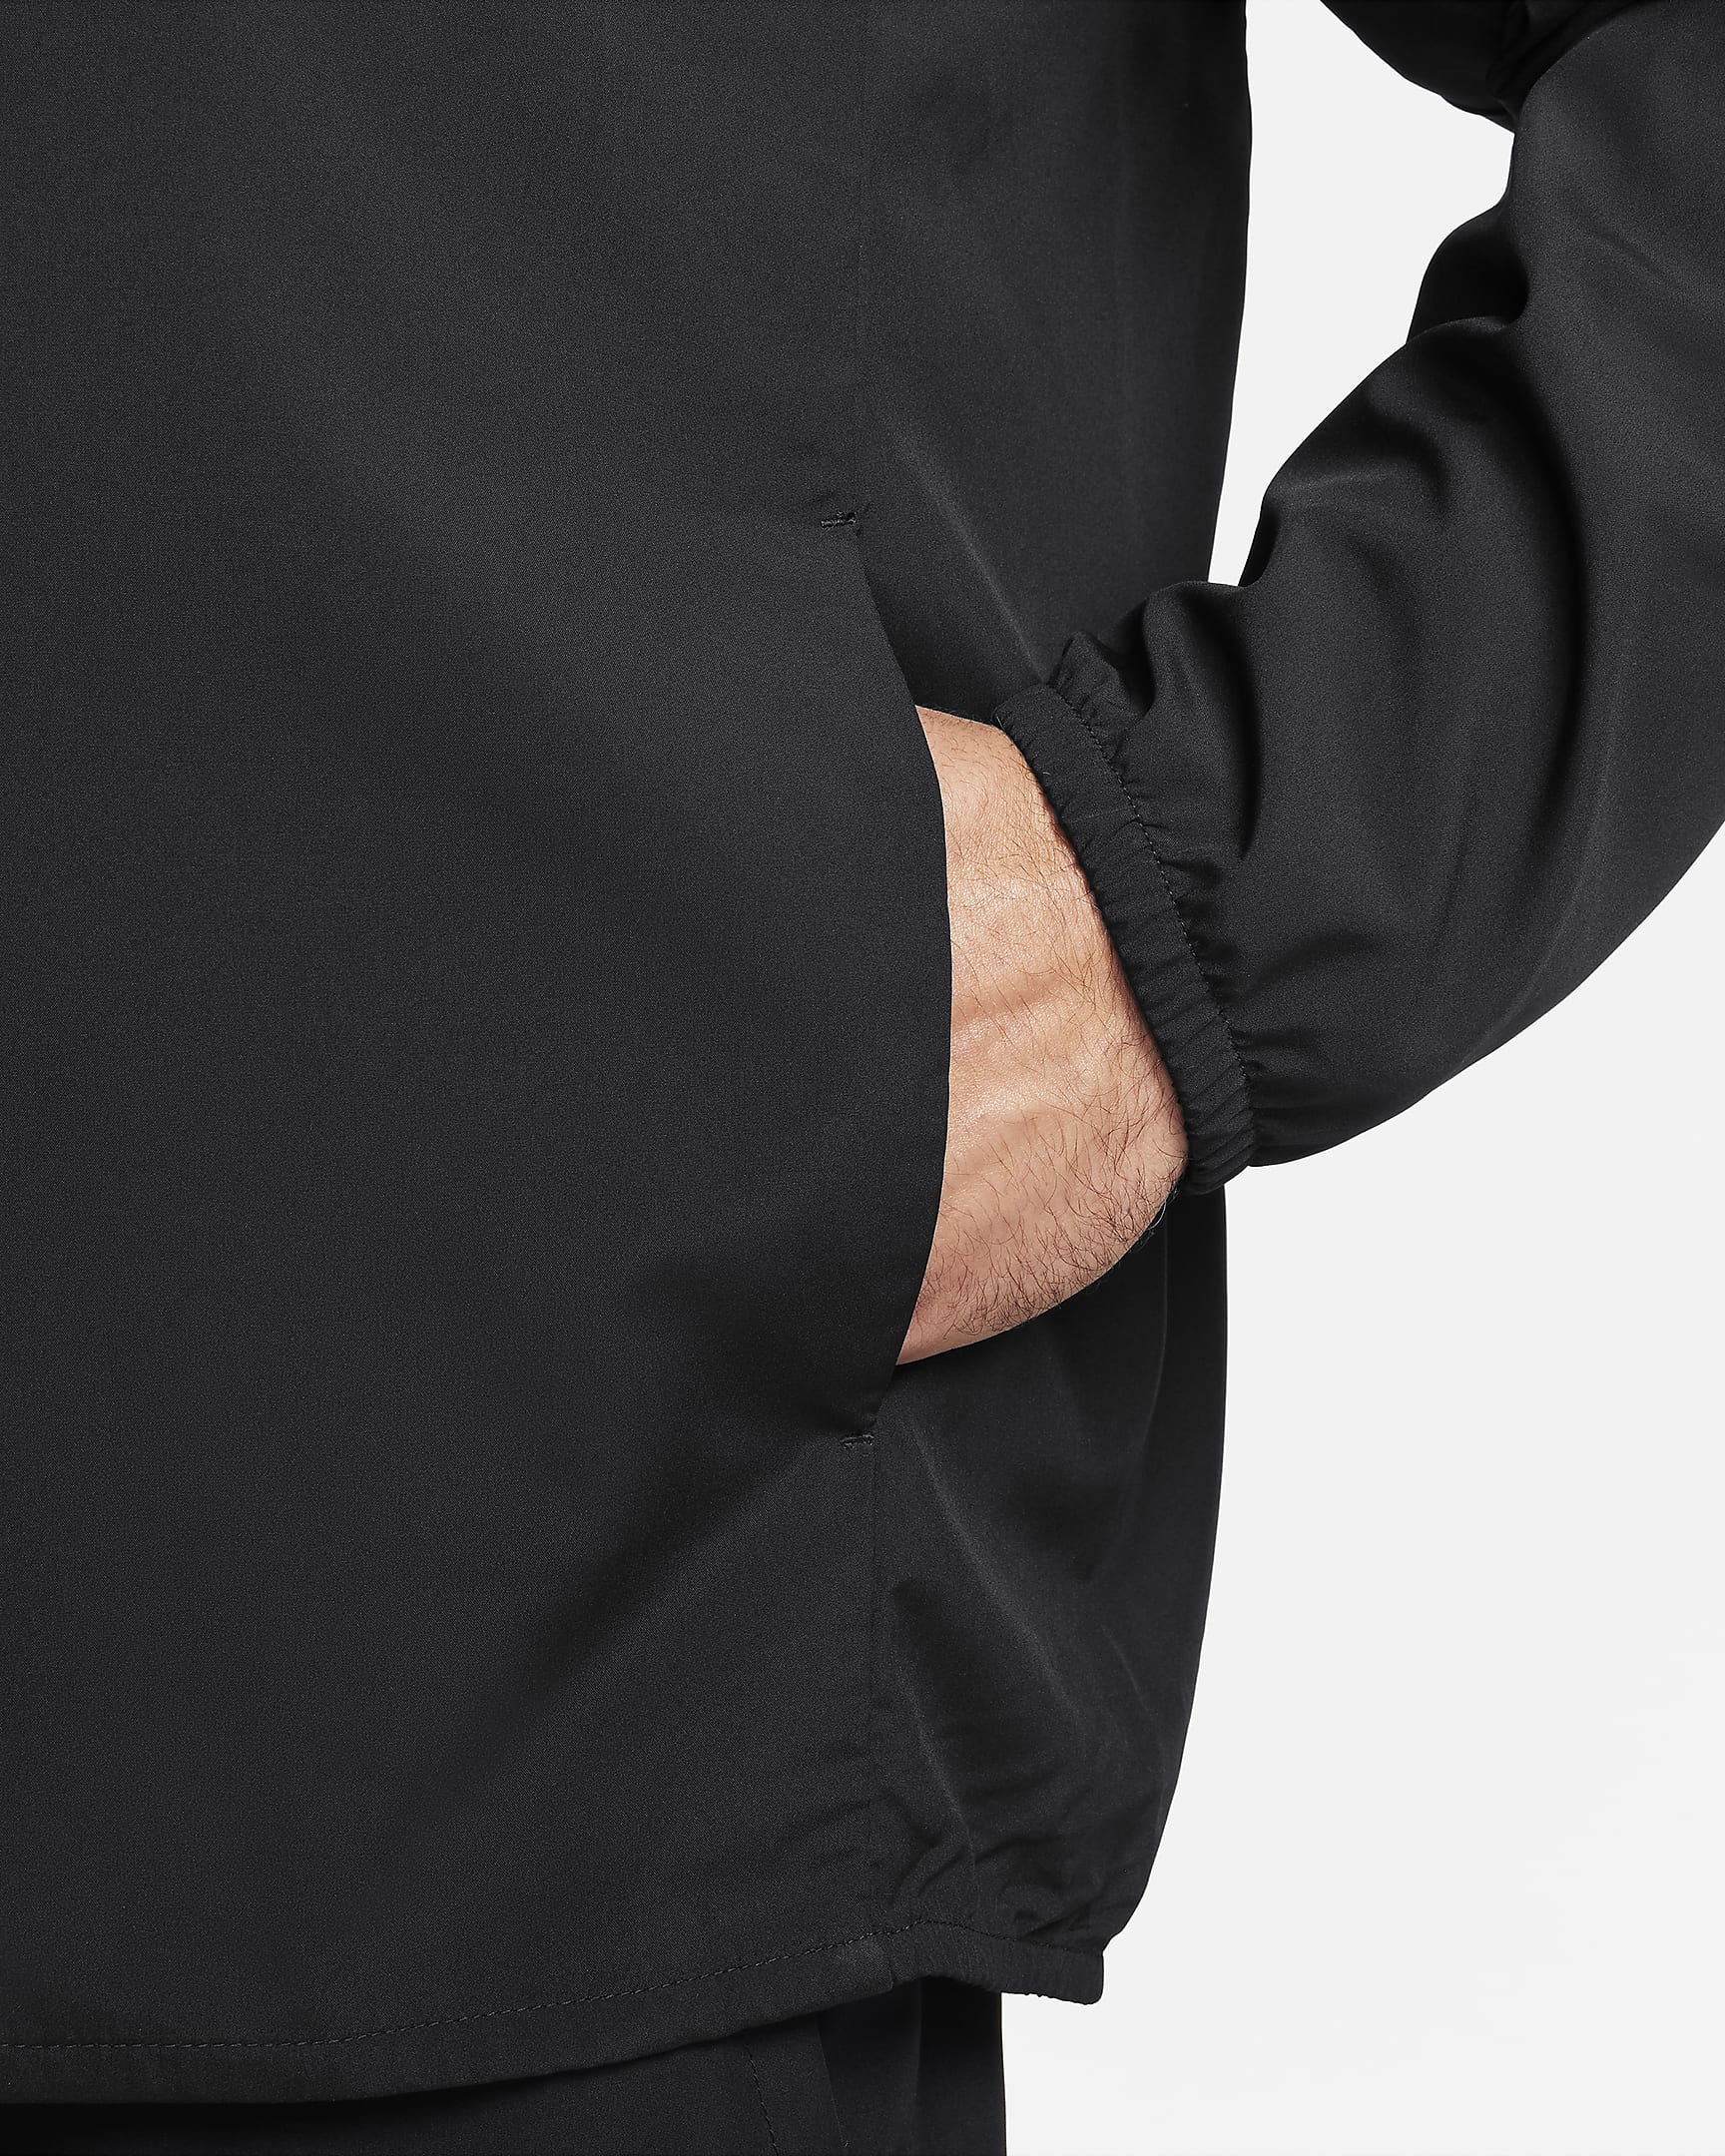 Nike Form Men's Dri-FIT Versatile Jacket. Nike BG